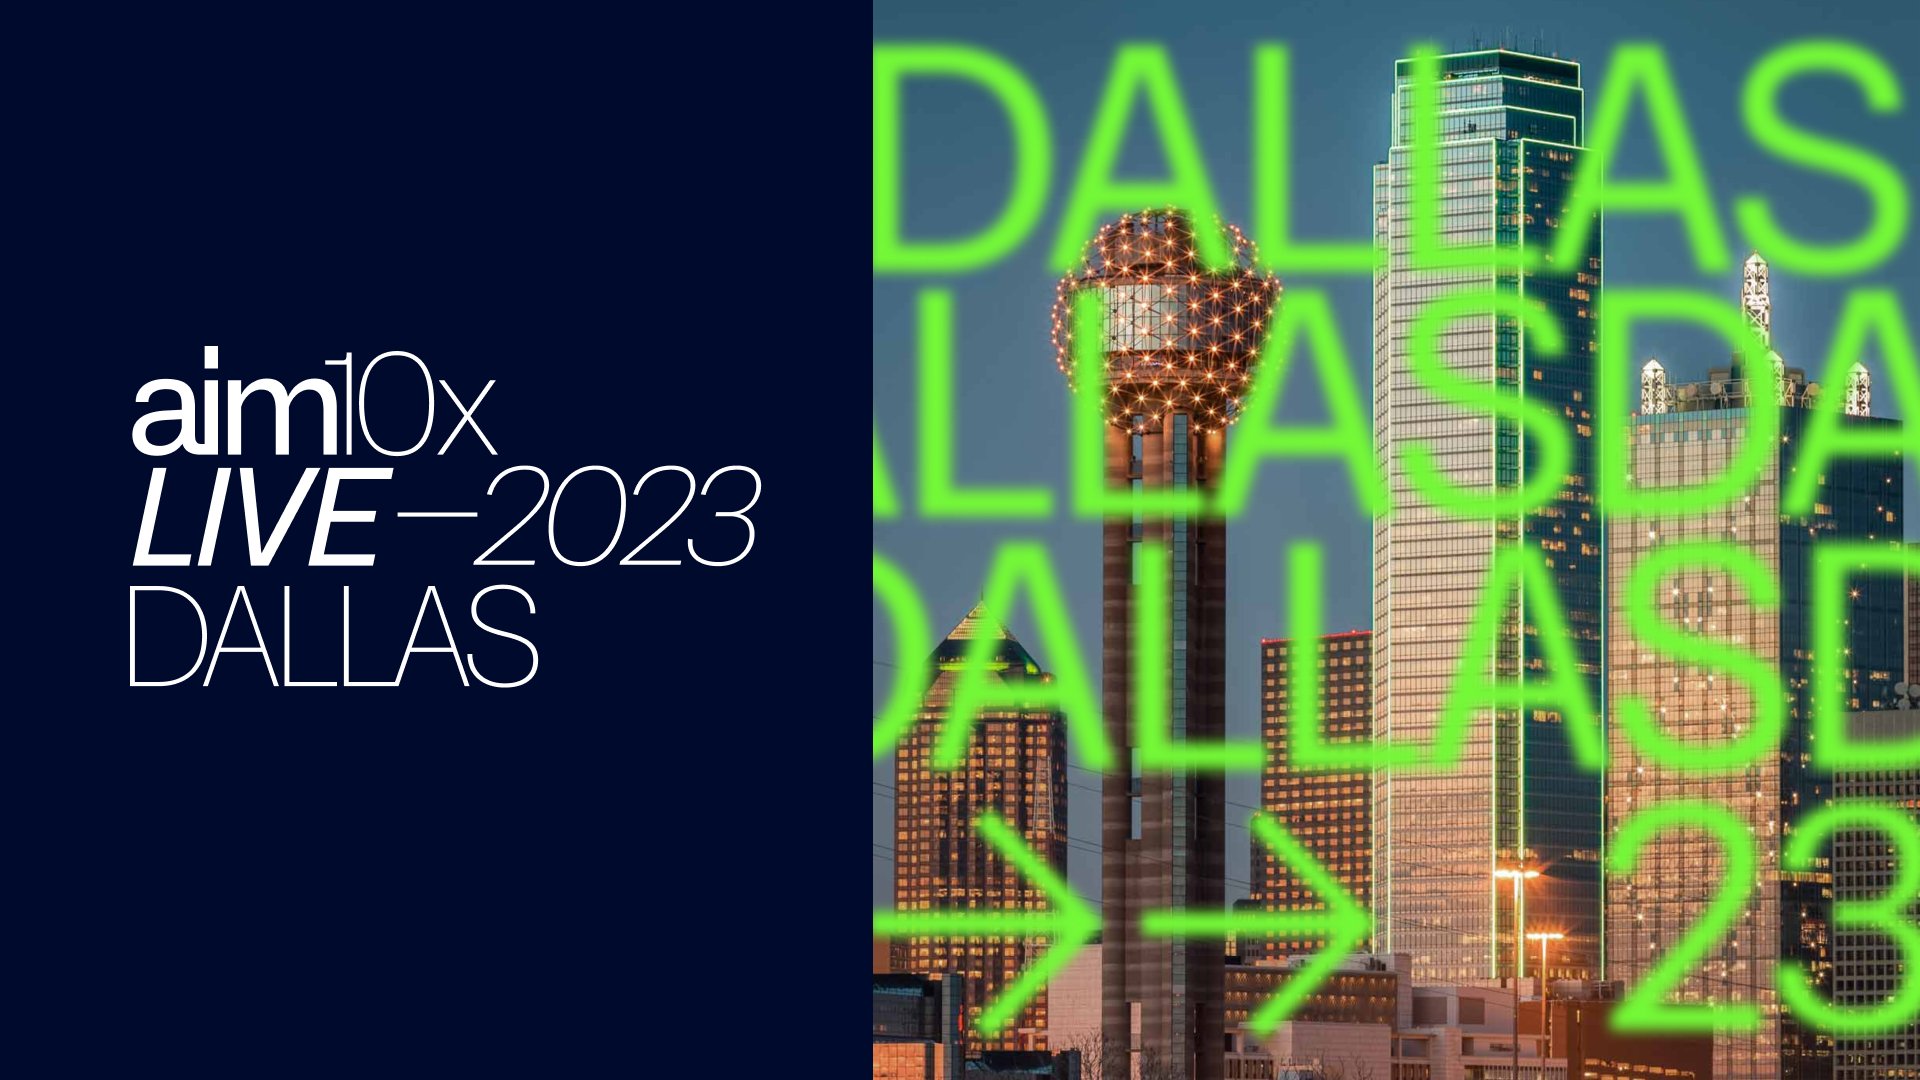 aim10x Live 2023 Dallas o9 Solutions